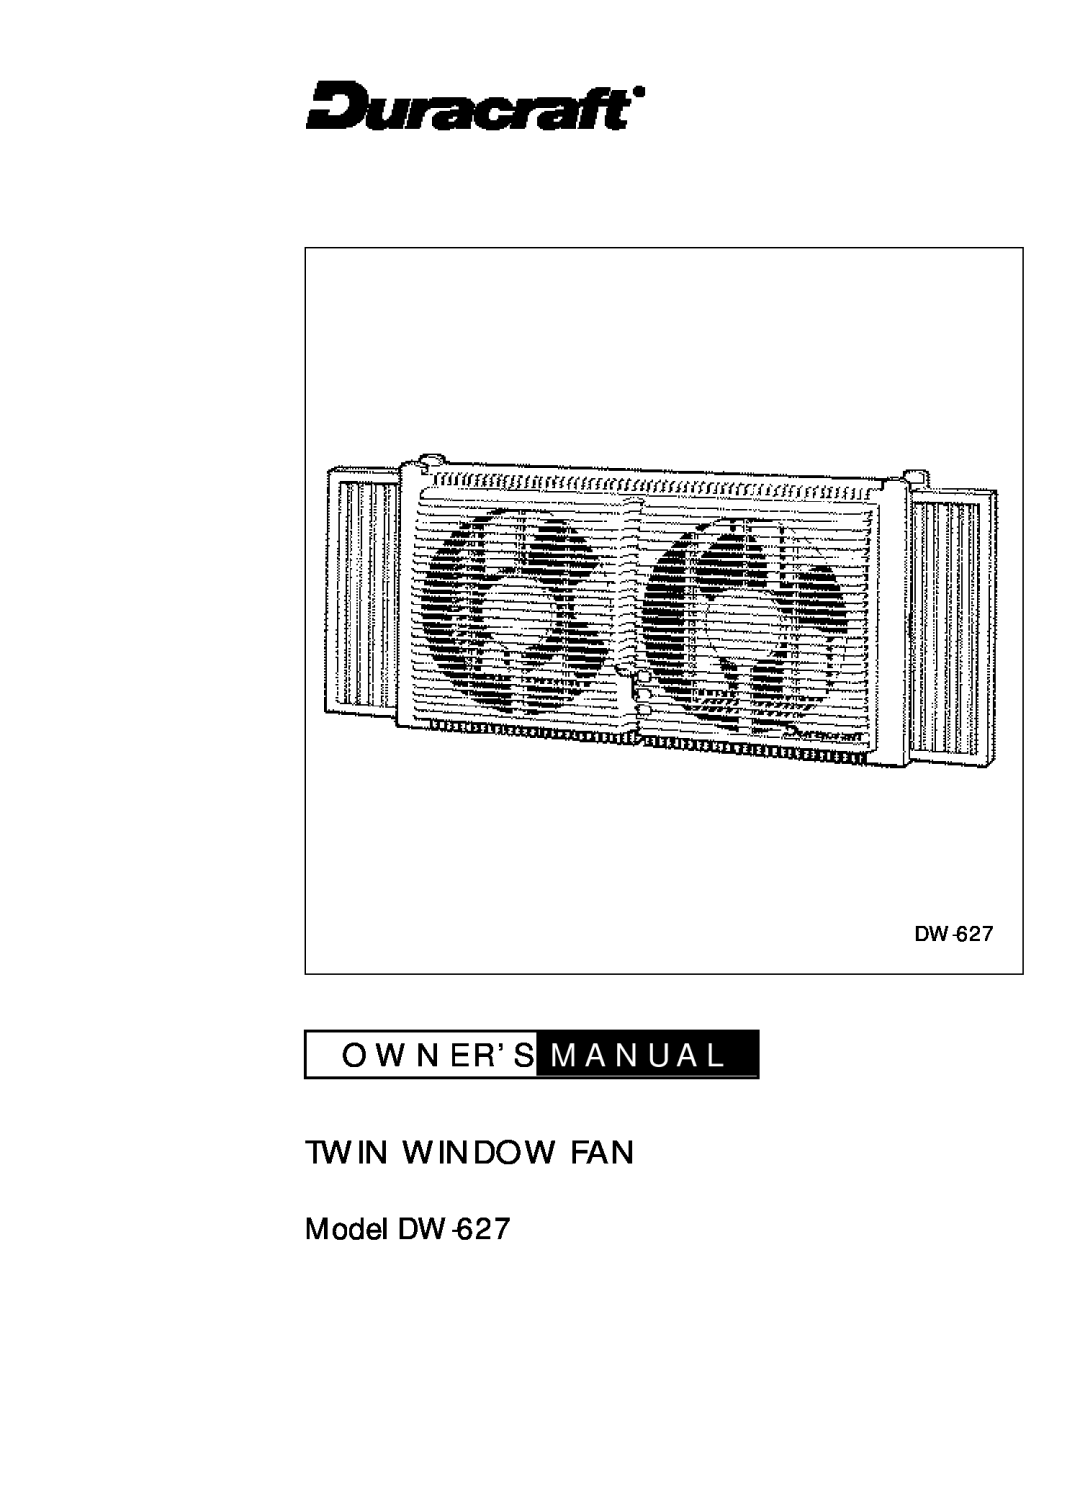 Duracraft owner manual O W N E R ’ S M A N U A L Twin Window Fan, Model DW-627 